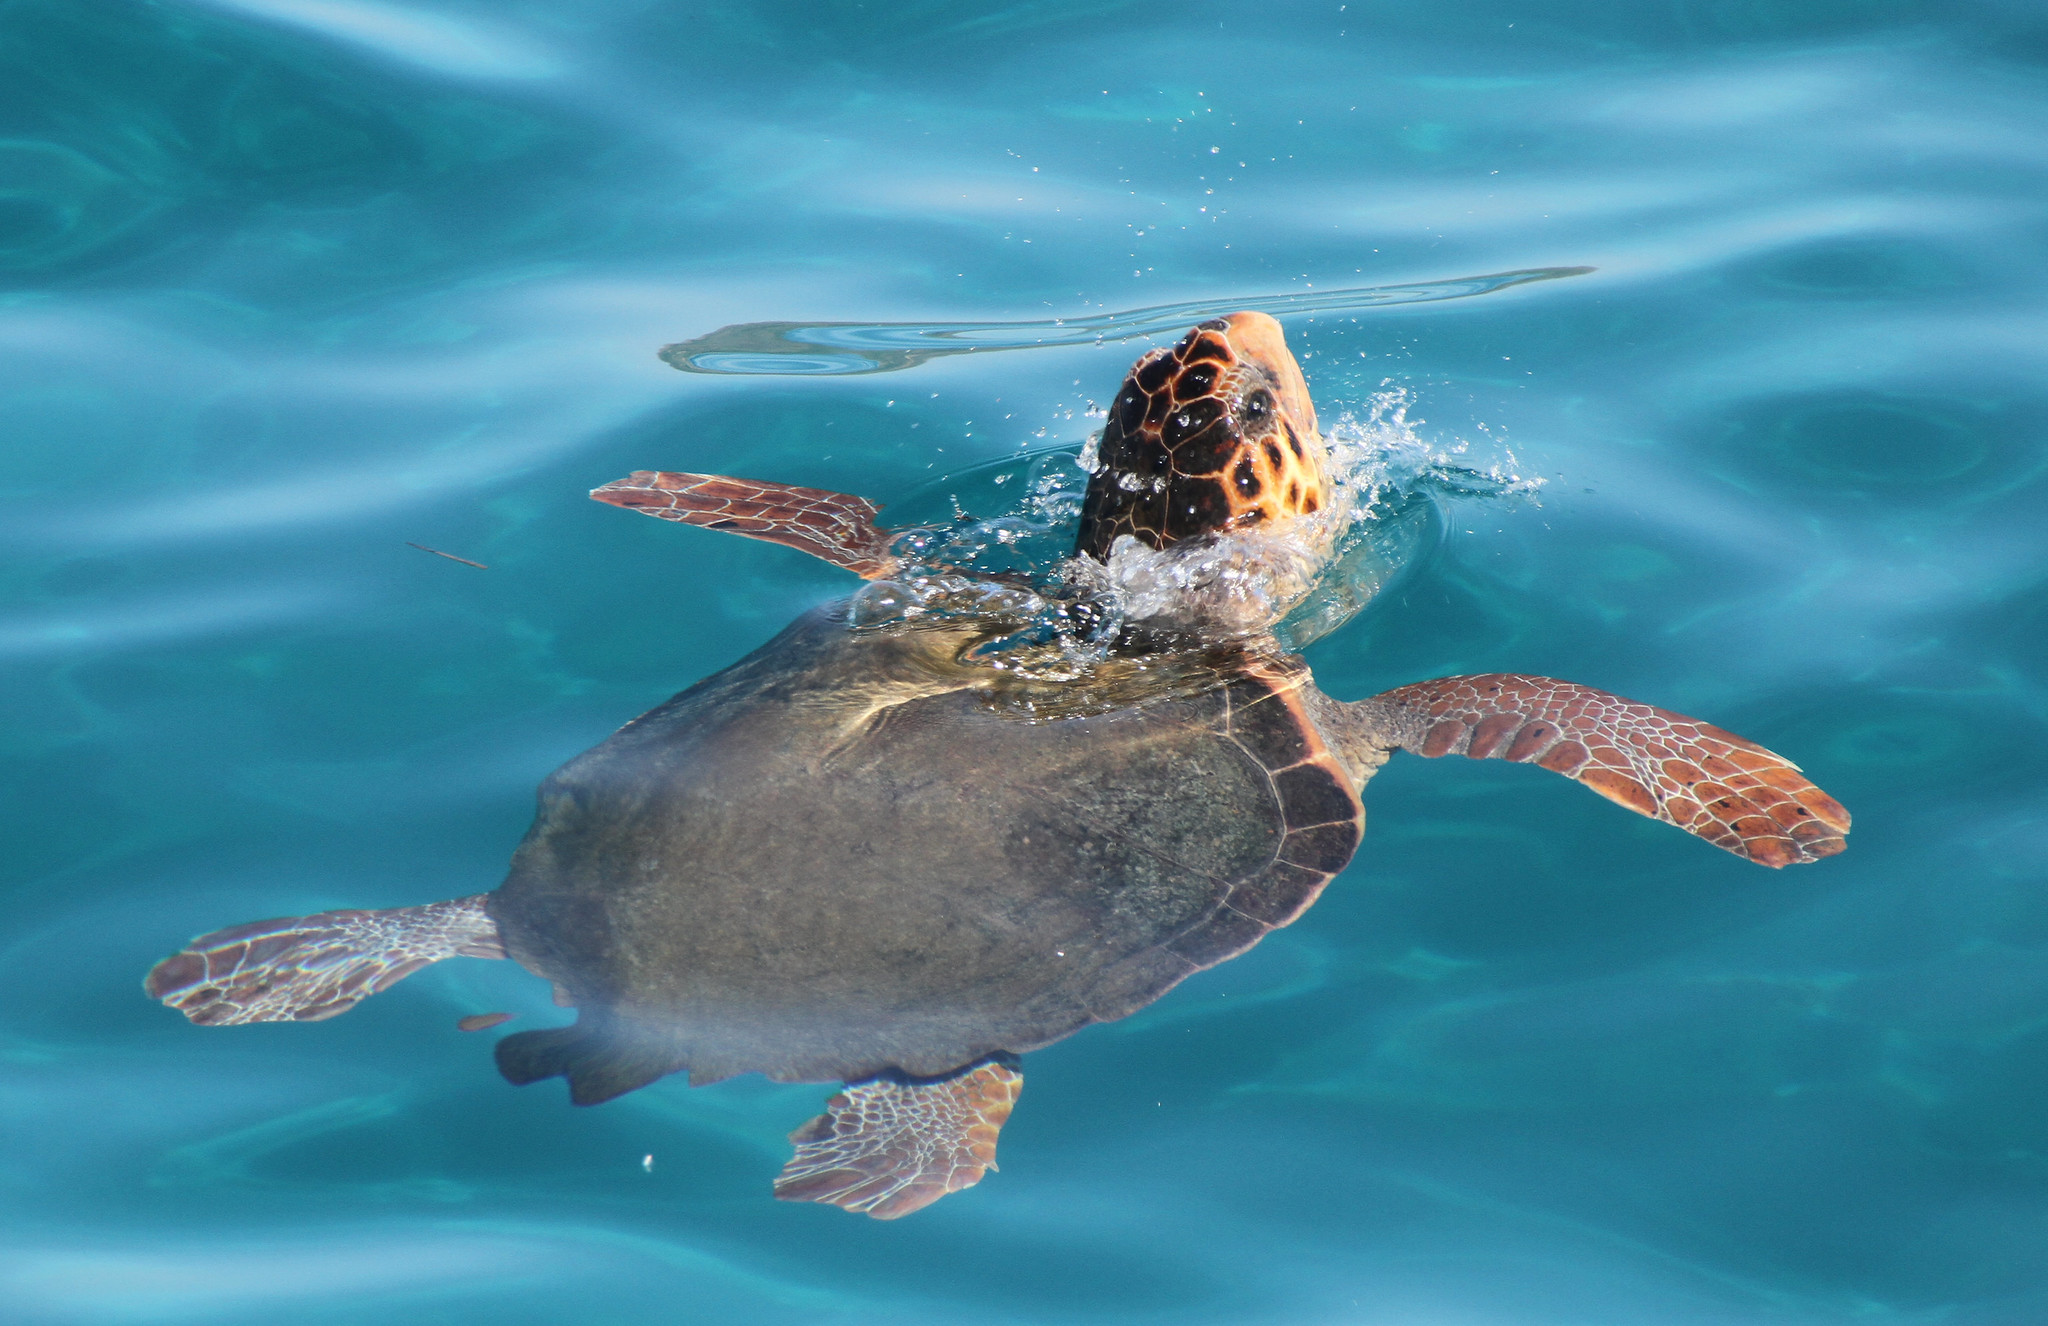 Черепаха Каретта (логгерхед). Морская черепаха логгерхед. Архелон черепаха. Огромная морская черепаха. Ласты черепахи